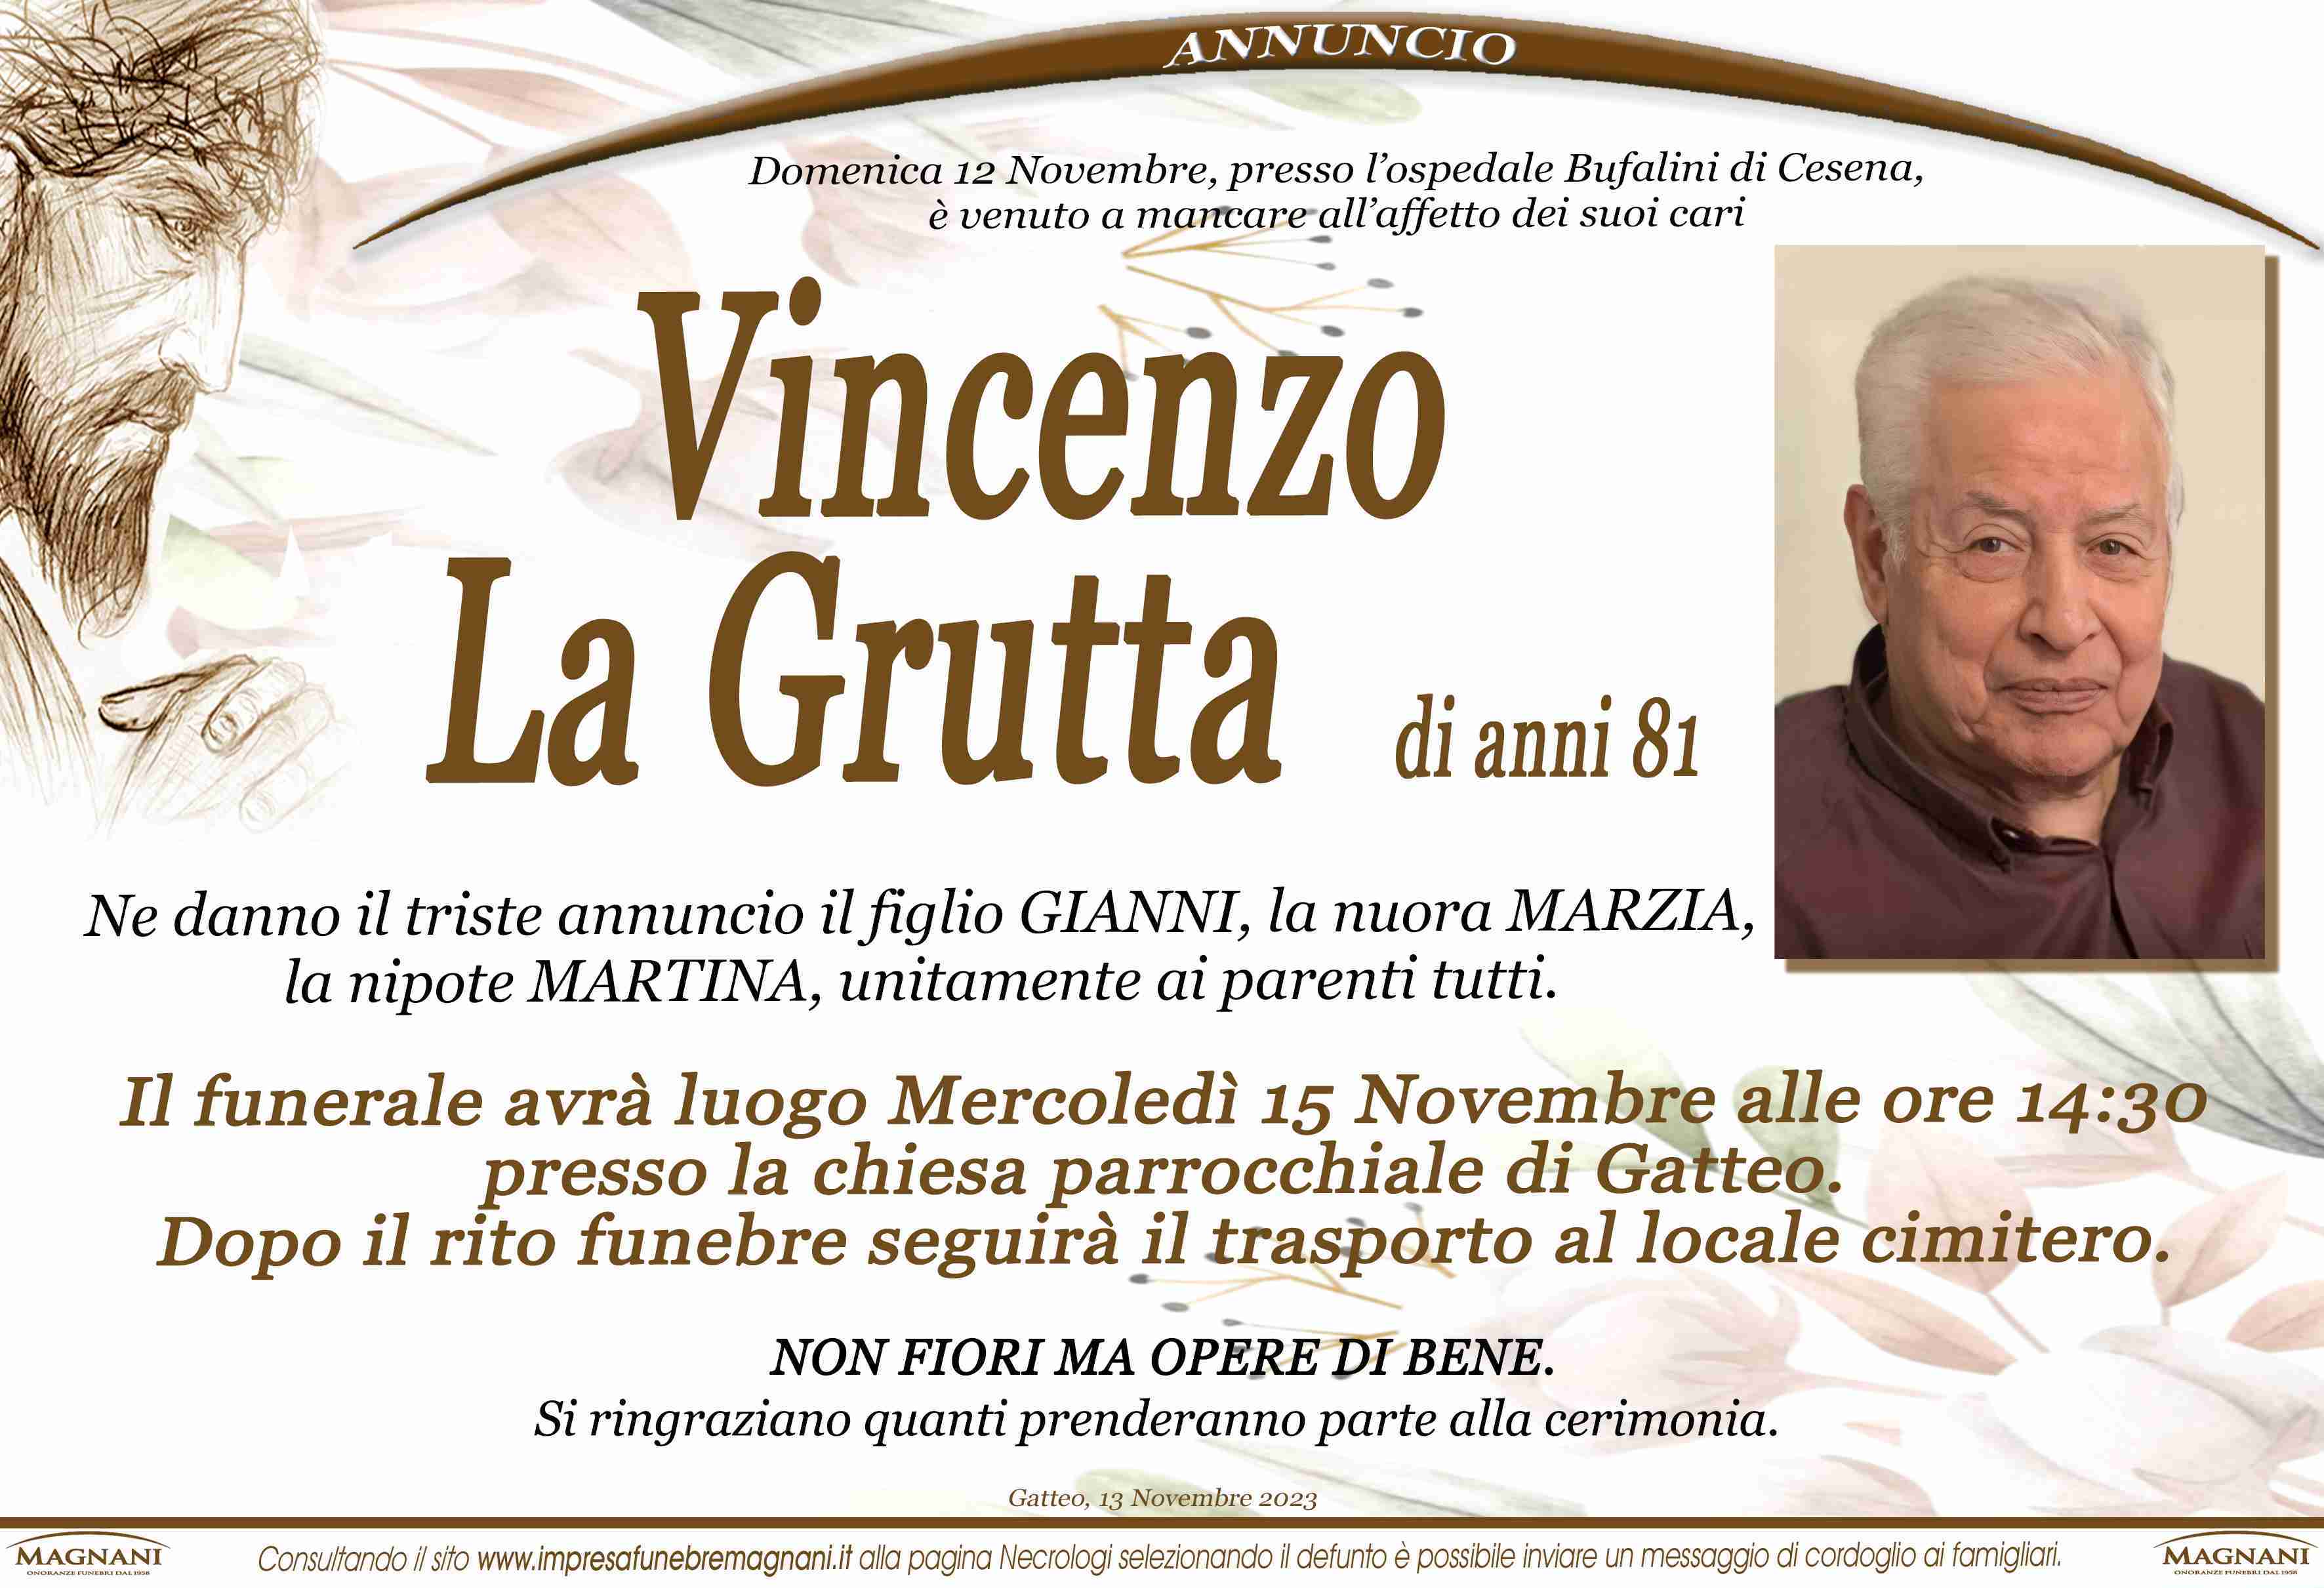 Vincenzo La Grutta